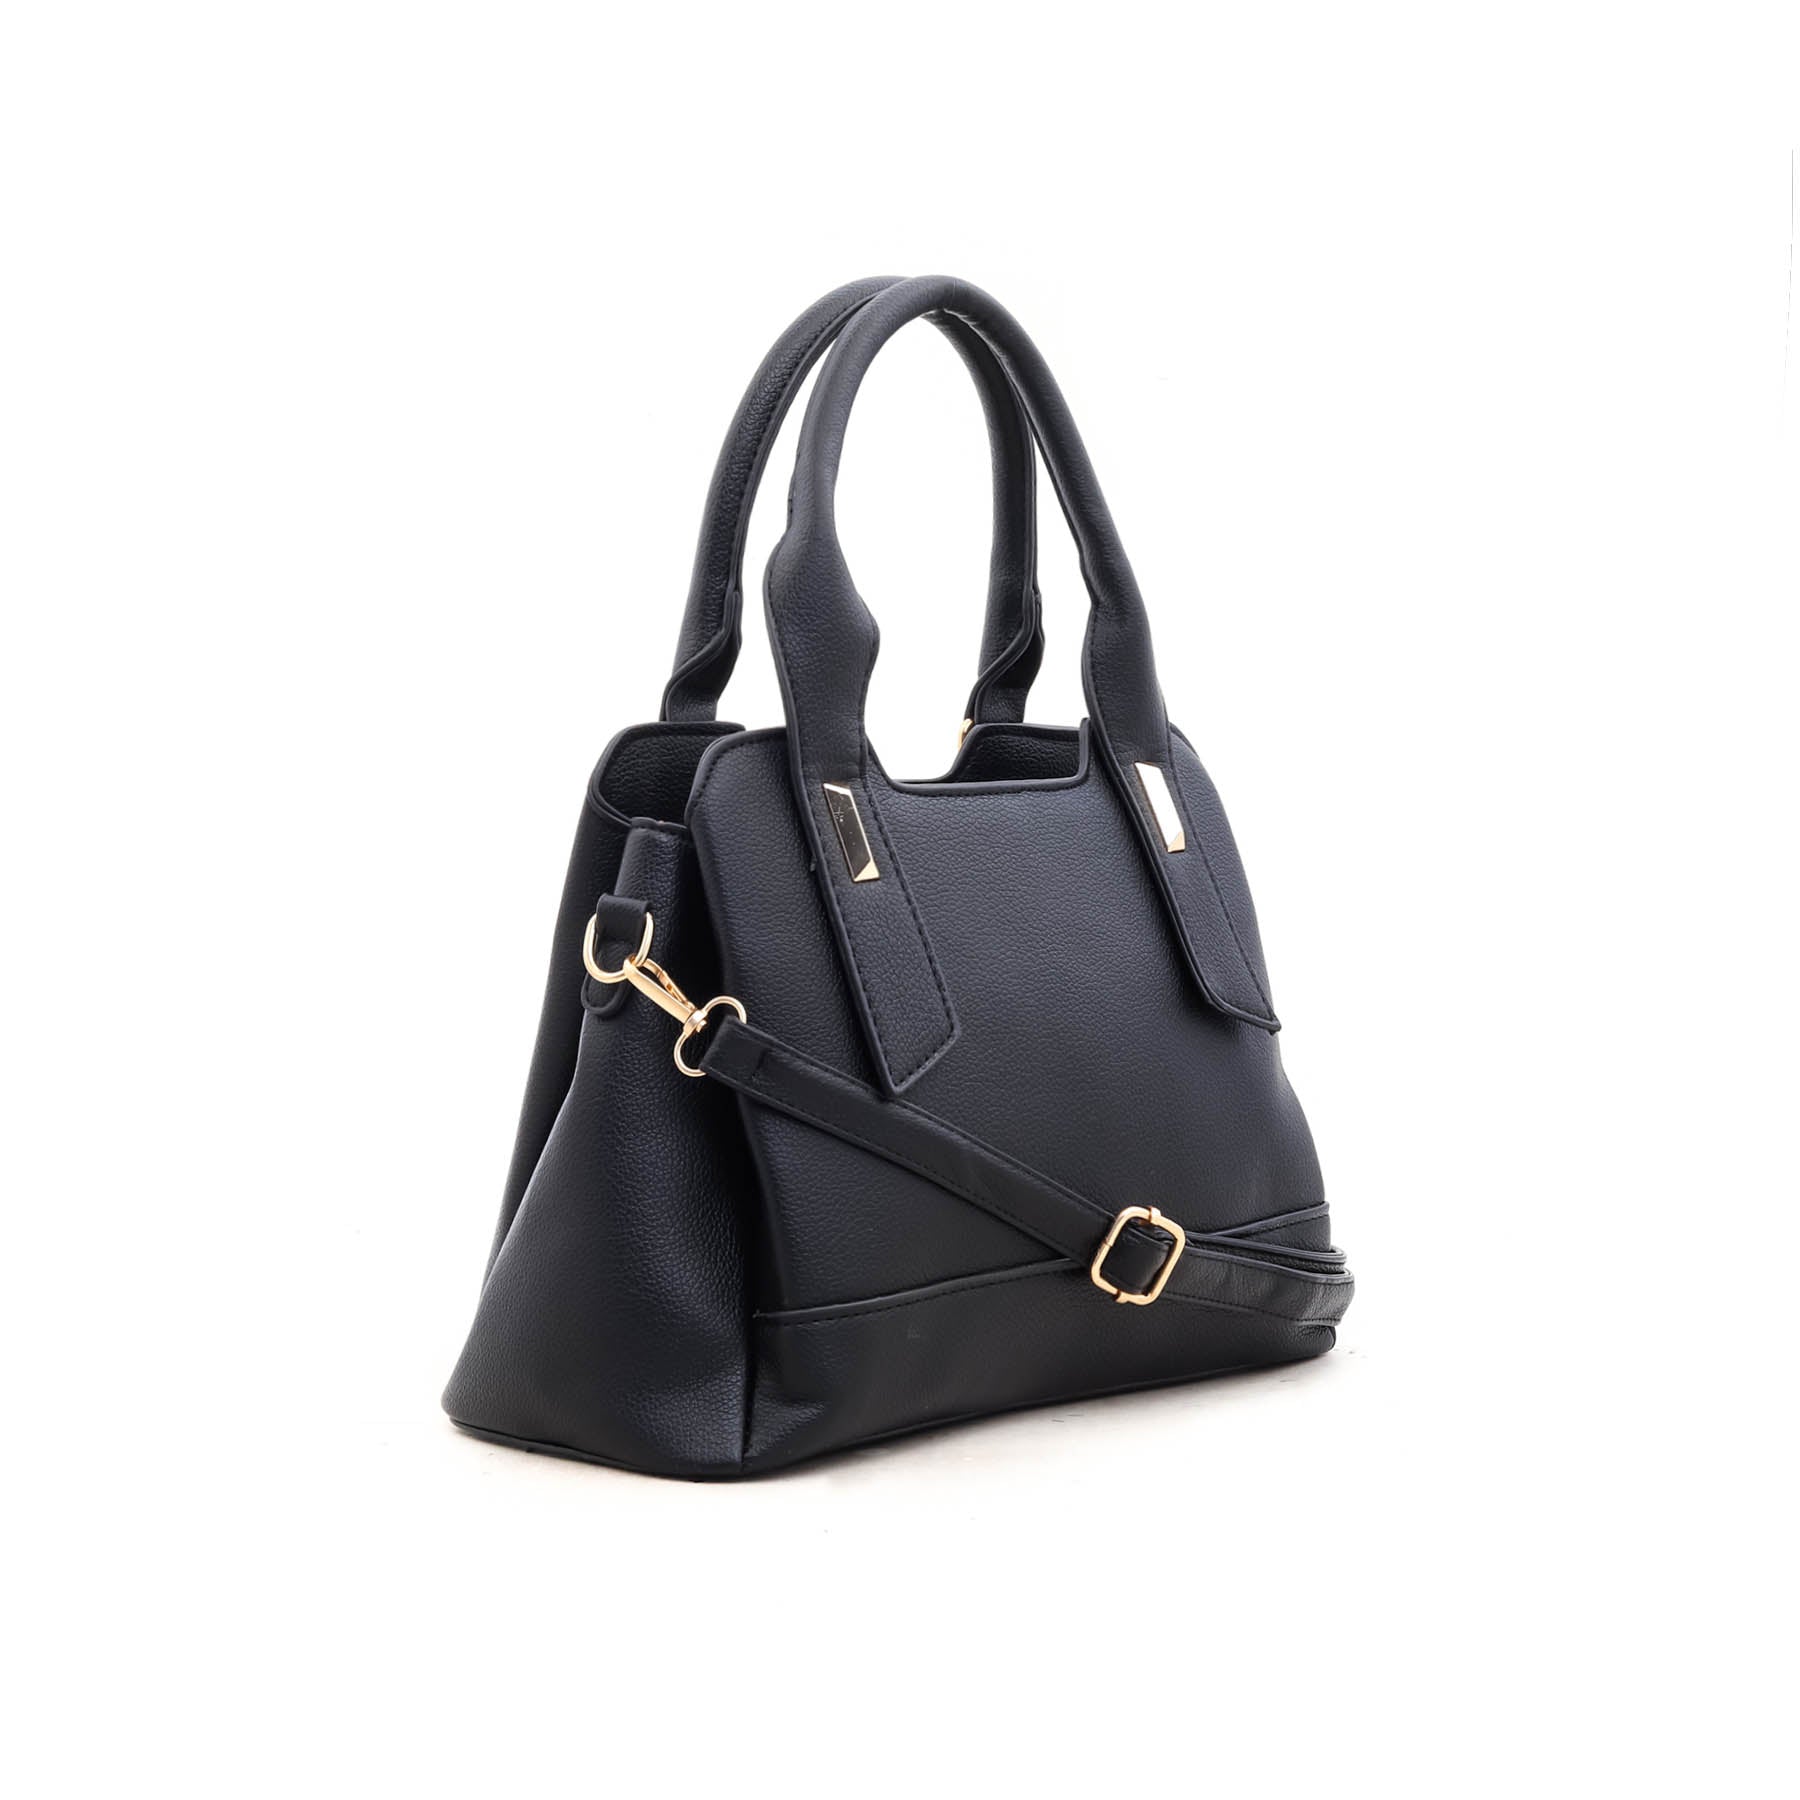 Black Formal Hand Bag P35650